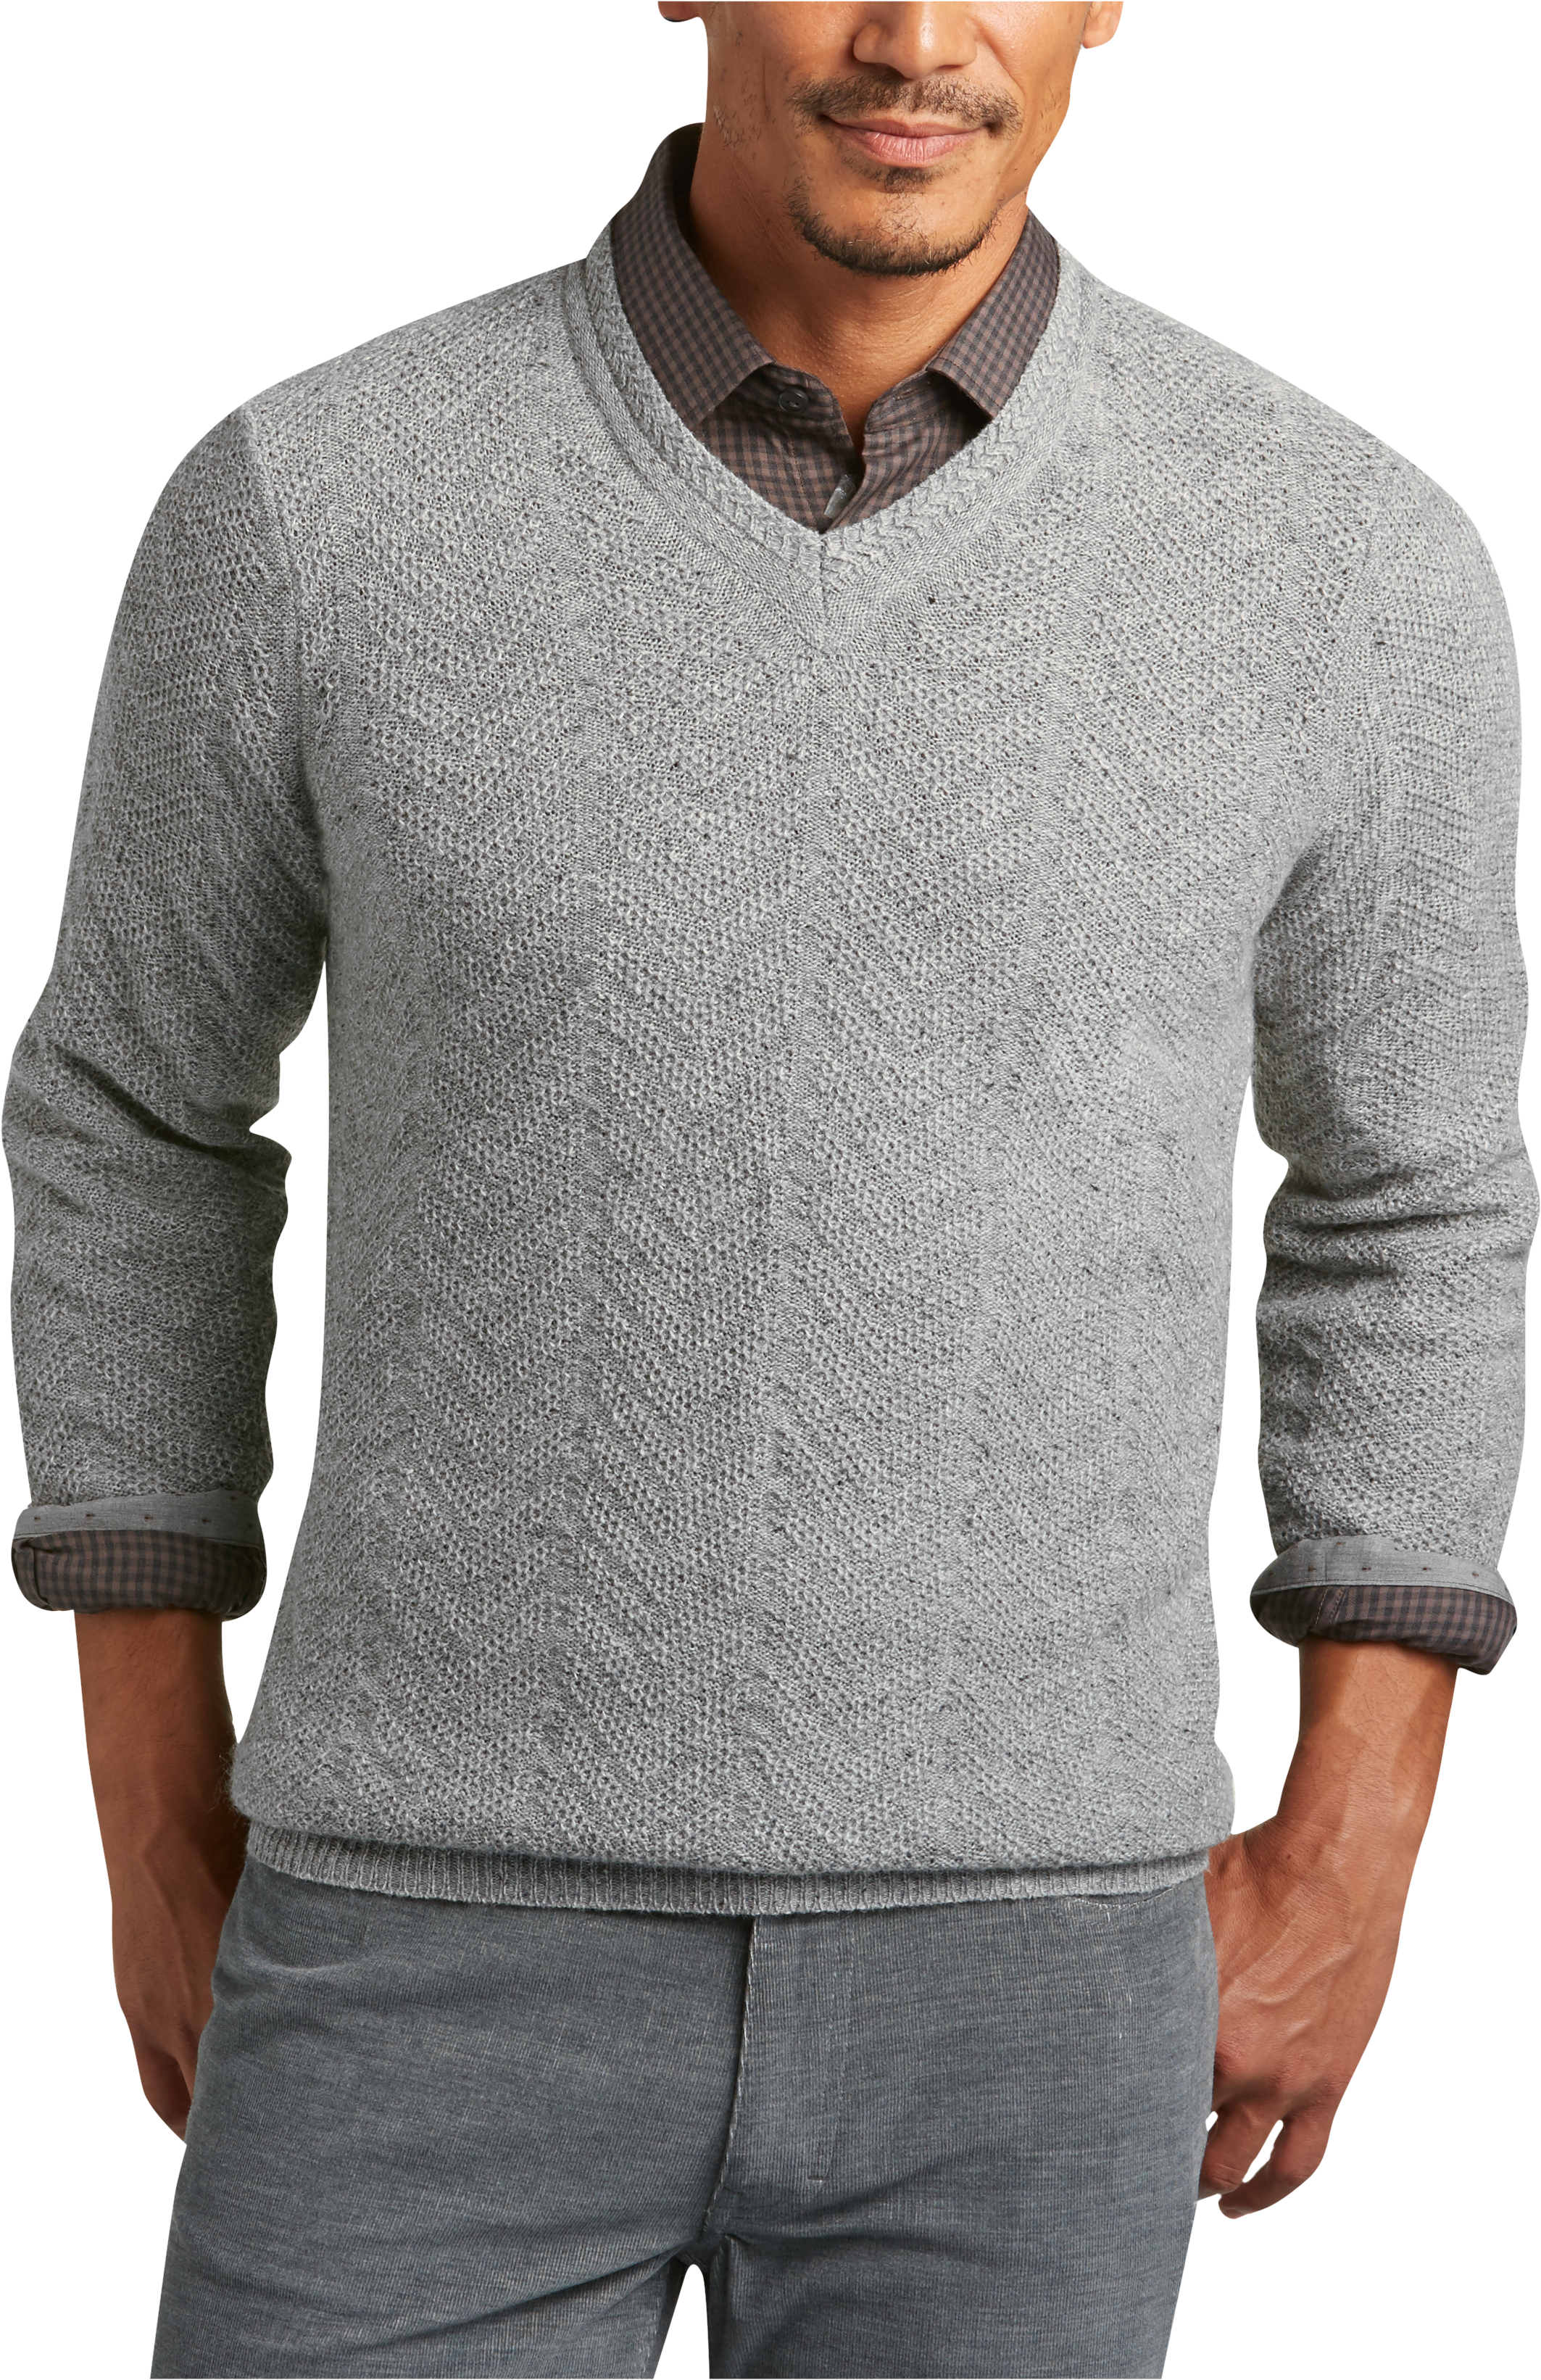 Joseph Abboud Silver V-Neck Sweater - Men's Sweaters | Men's Wearhouse